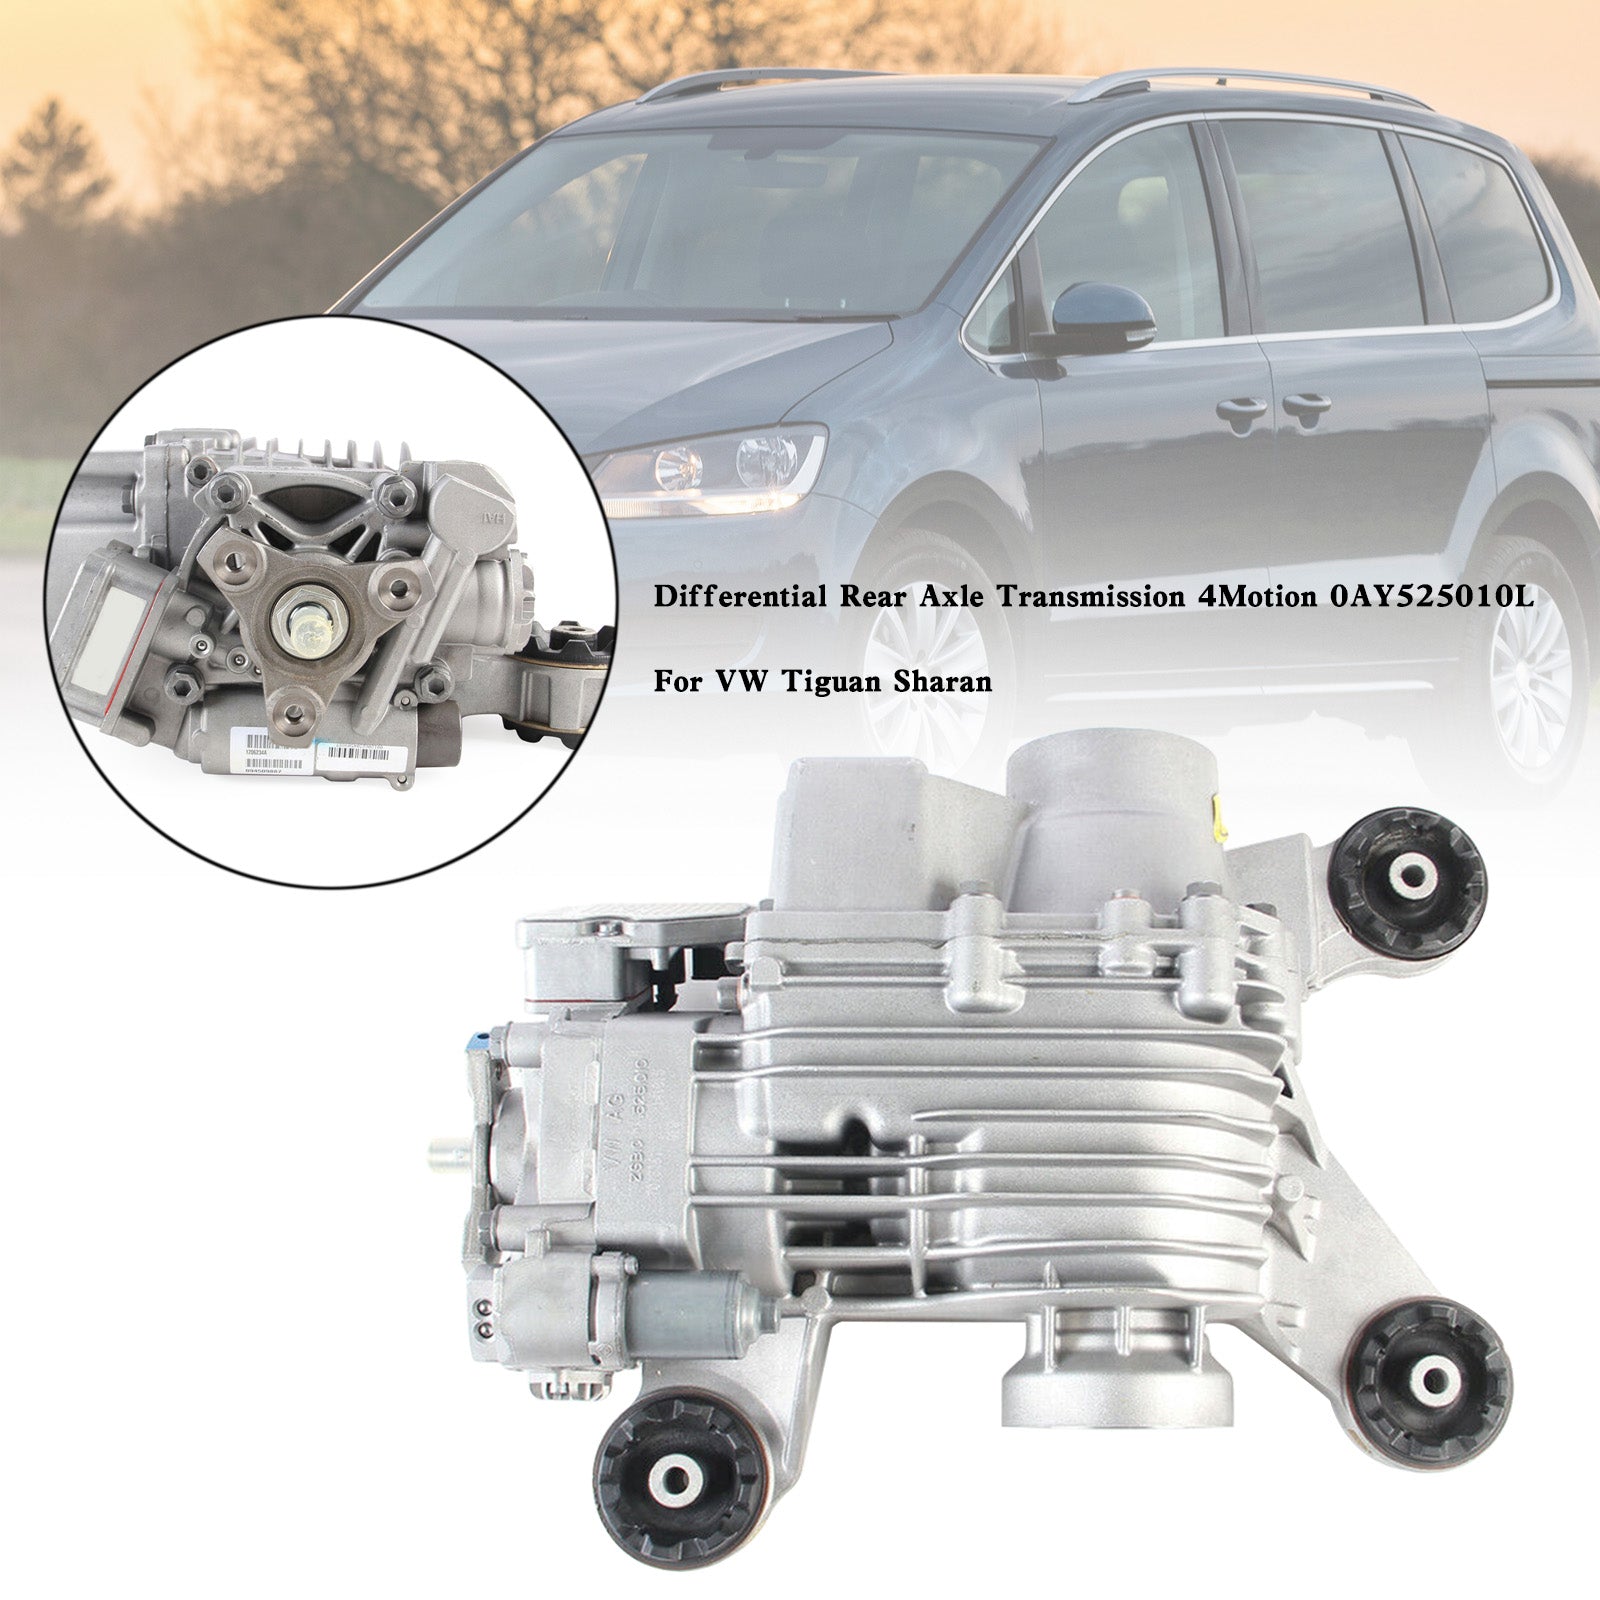 2009-2015 VW Passat 4Motion Différentiel Essieu Arrière Transmission 4Motion 0AY525010L